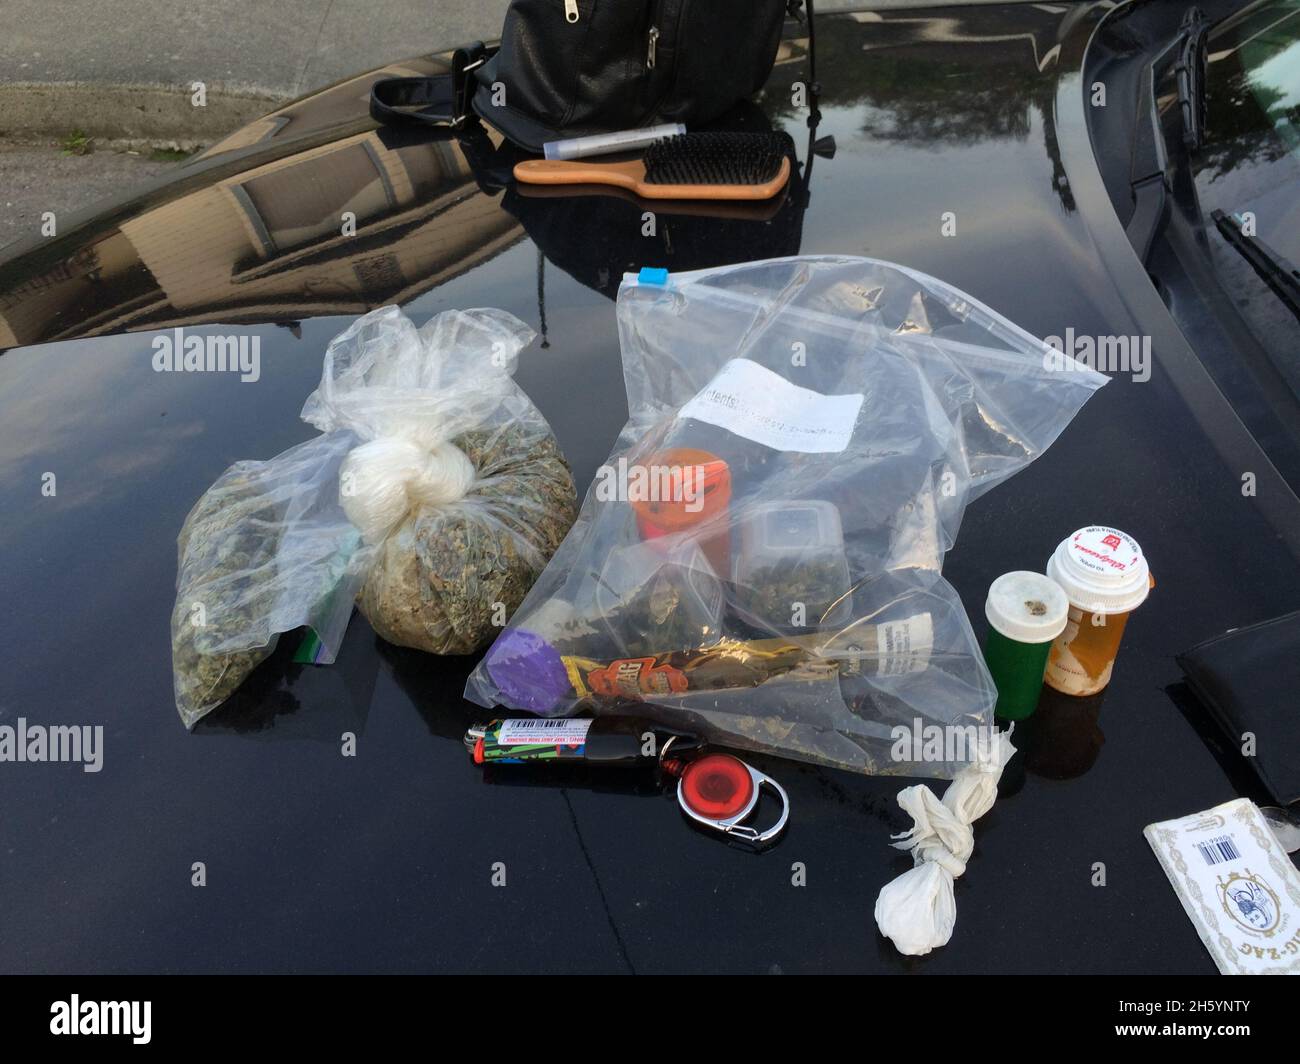 Nach einem Verkehrsstopp fand Ferndale Police: Eine Viertel Unze Methamphetamin, über 100 Gramm verpacktes Marihuana, etwa 53 Gramm konzentriertes Cannabis/Marihuana und eine Methamphetamine-Pfeife/Drogenzubehör und fotografierte es ca. 23. Oktober 2015 Stockfoto